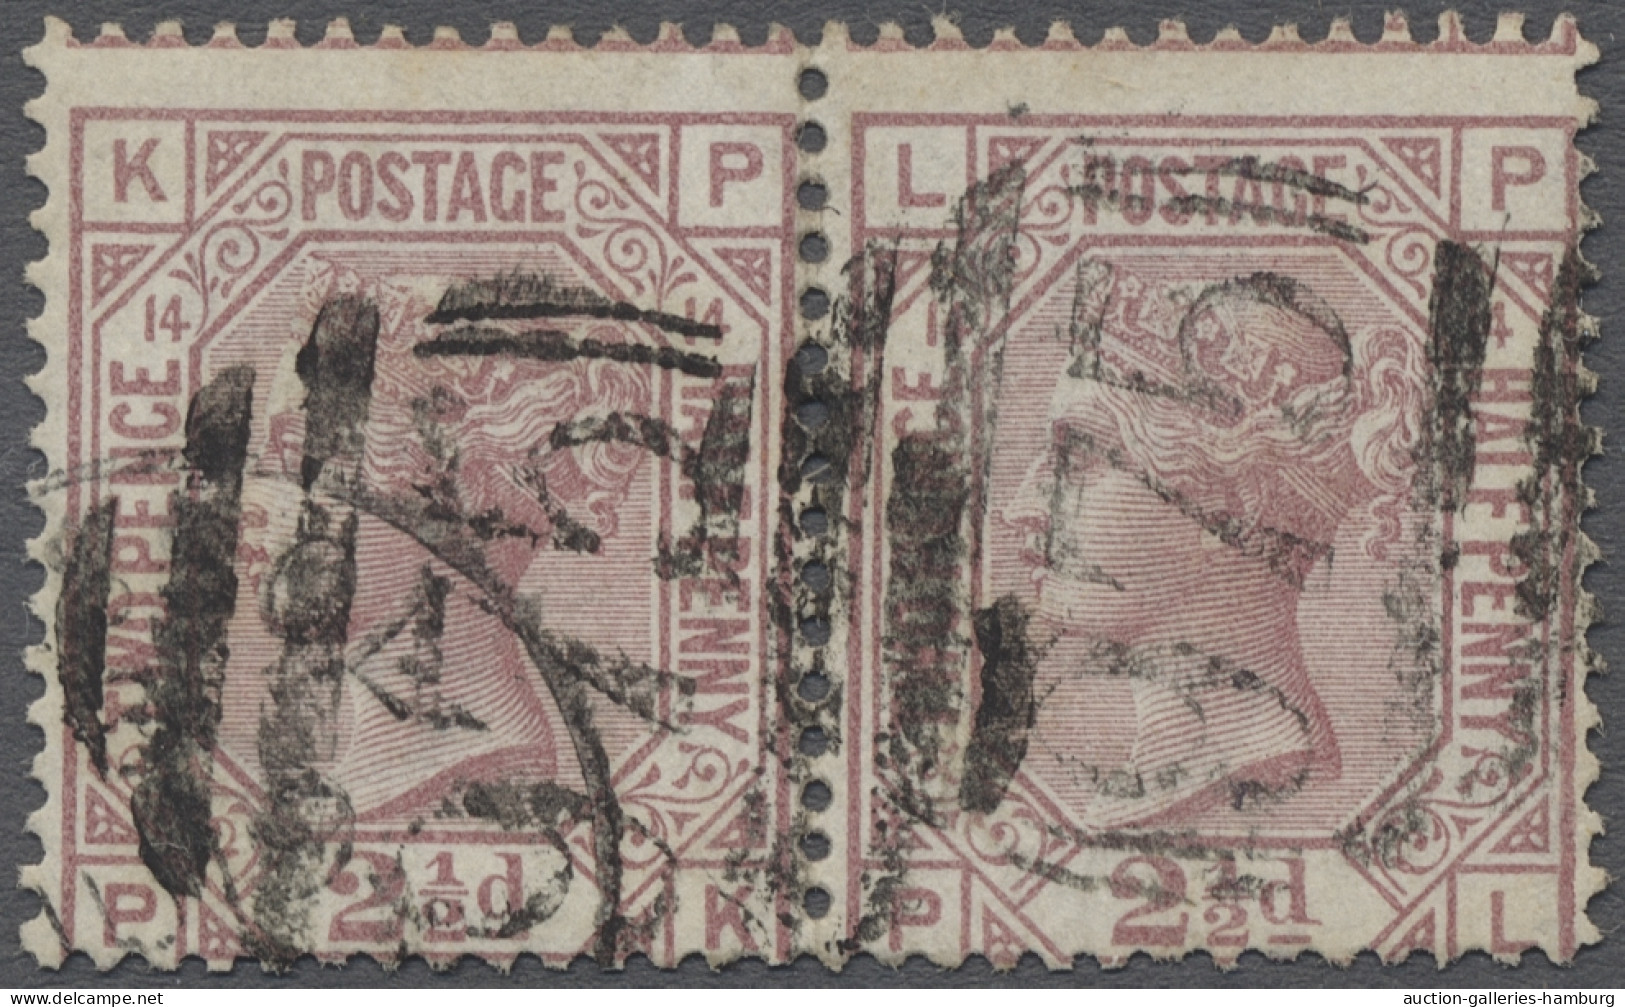 Pair/o Cyprus: 1878/1880, Großbritannien "Victoria" 2 1/2 Pence Lilarosa Aus Der Platte - Sonstige